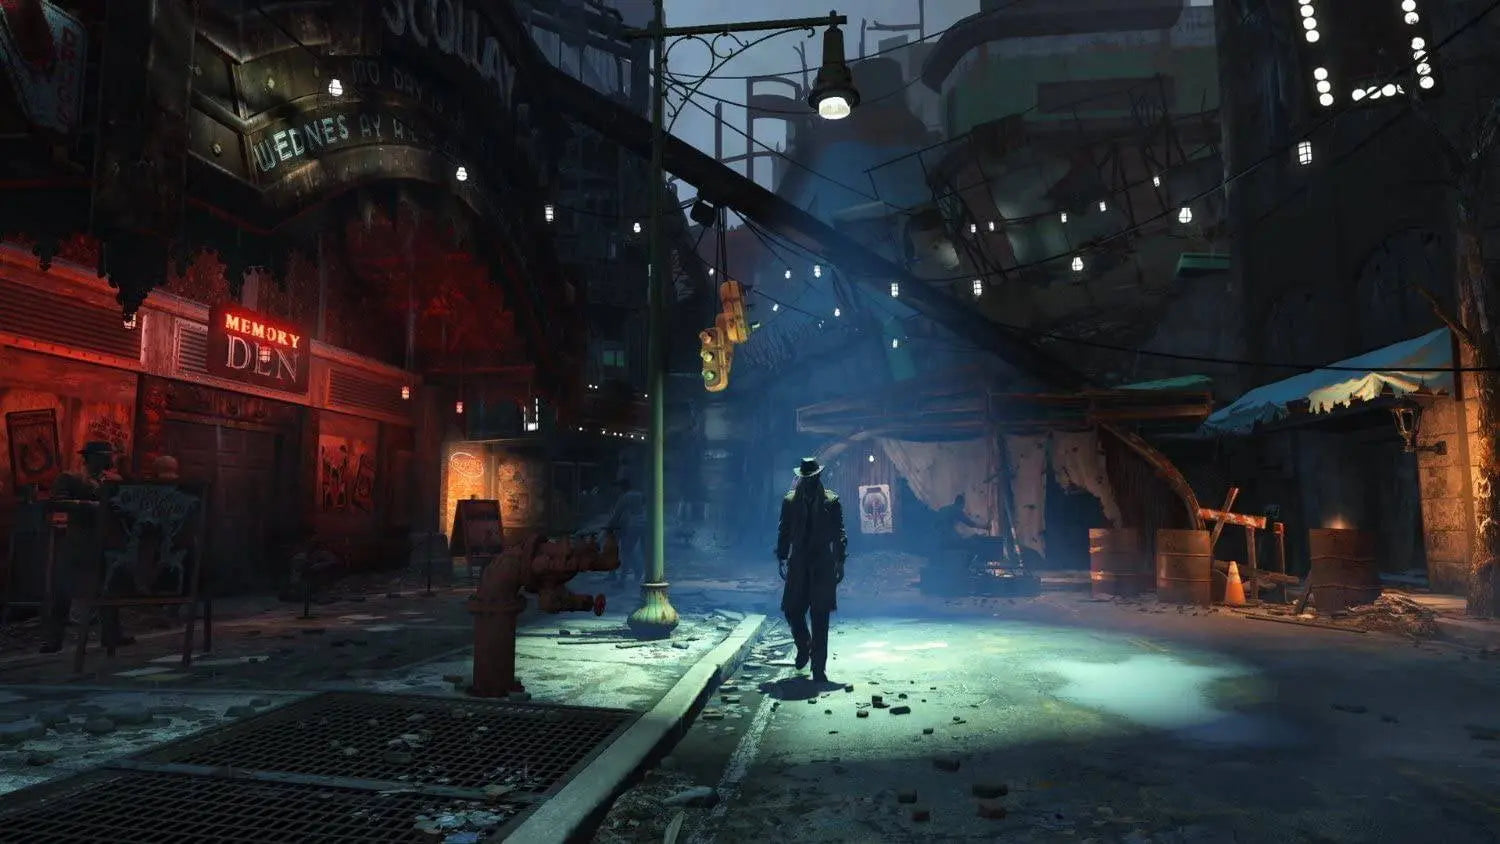 Fallout 4 - PlayStation 4 King Gaming